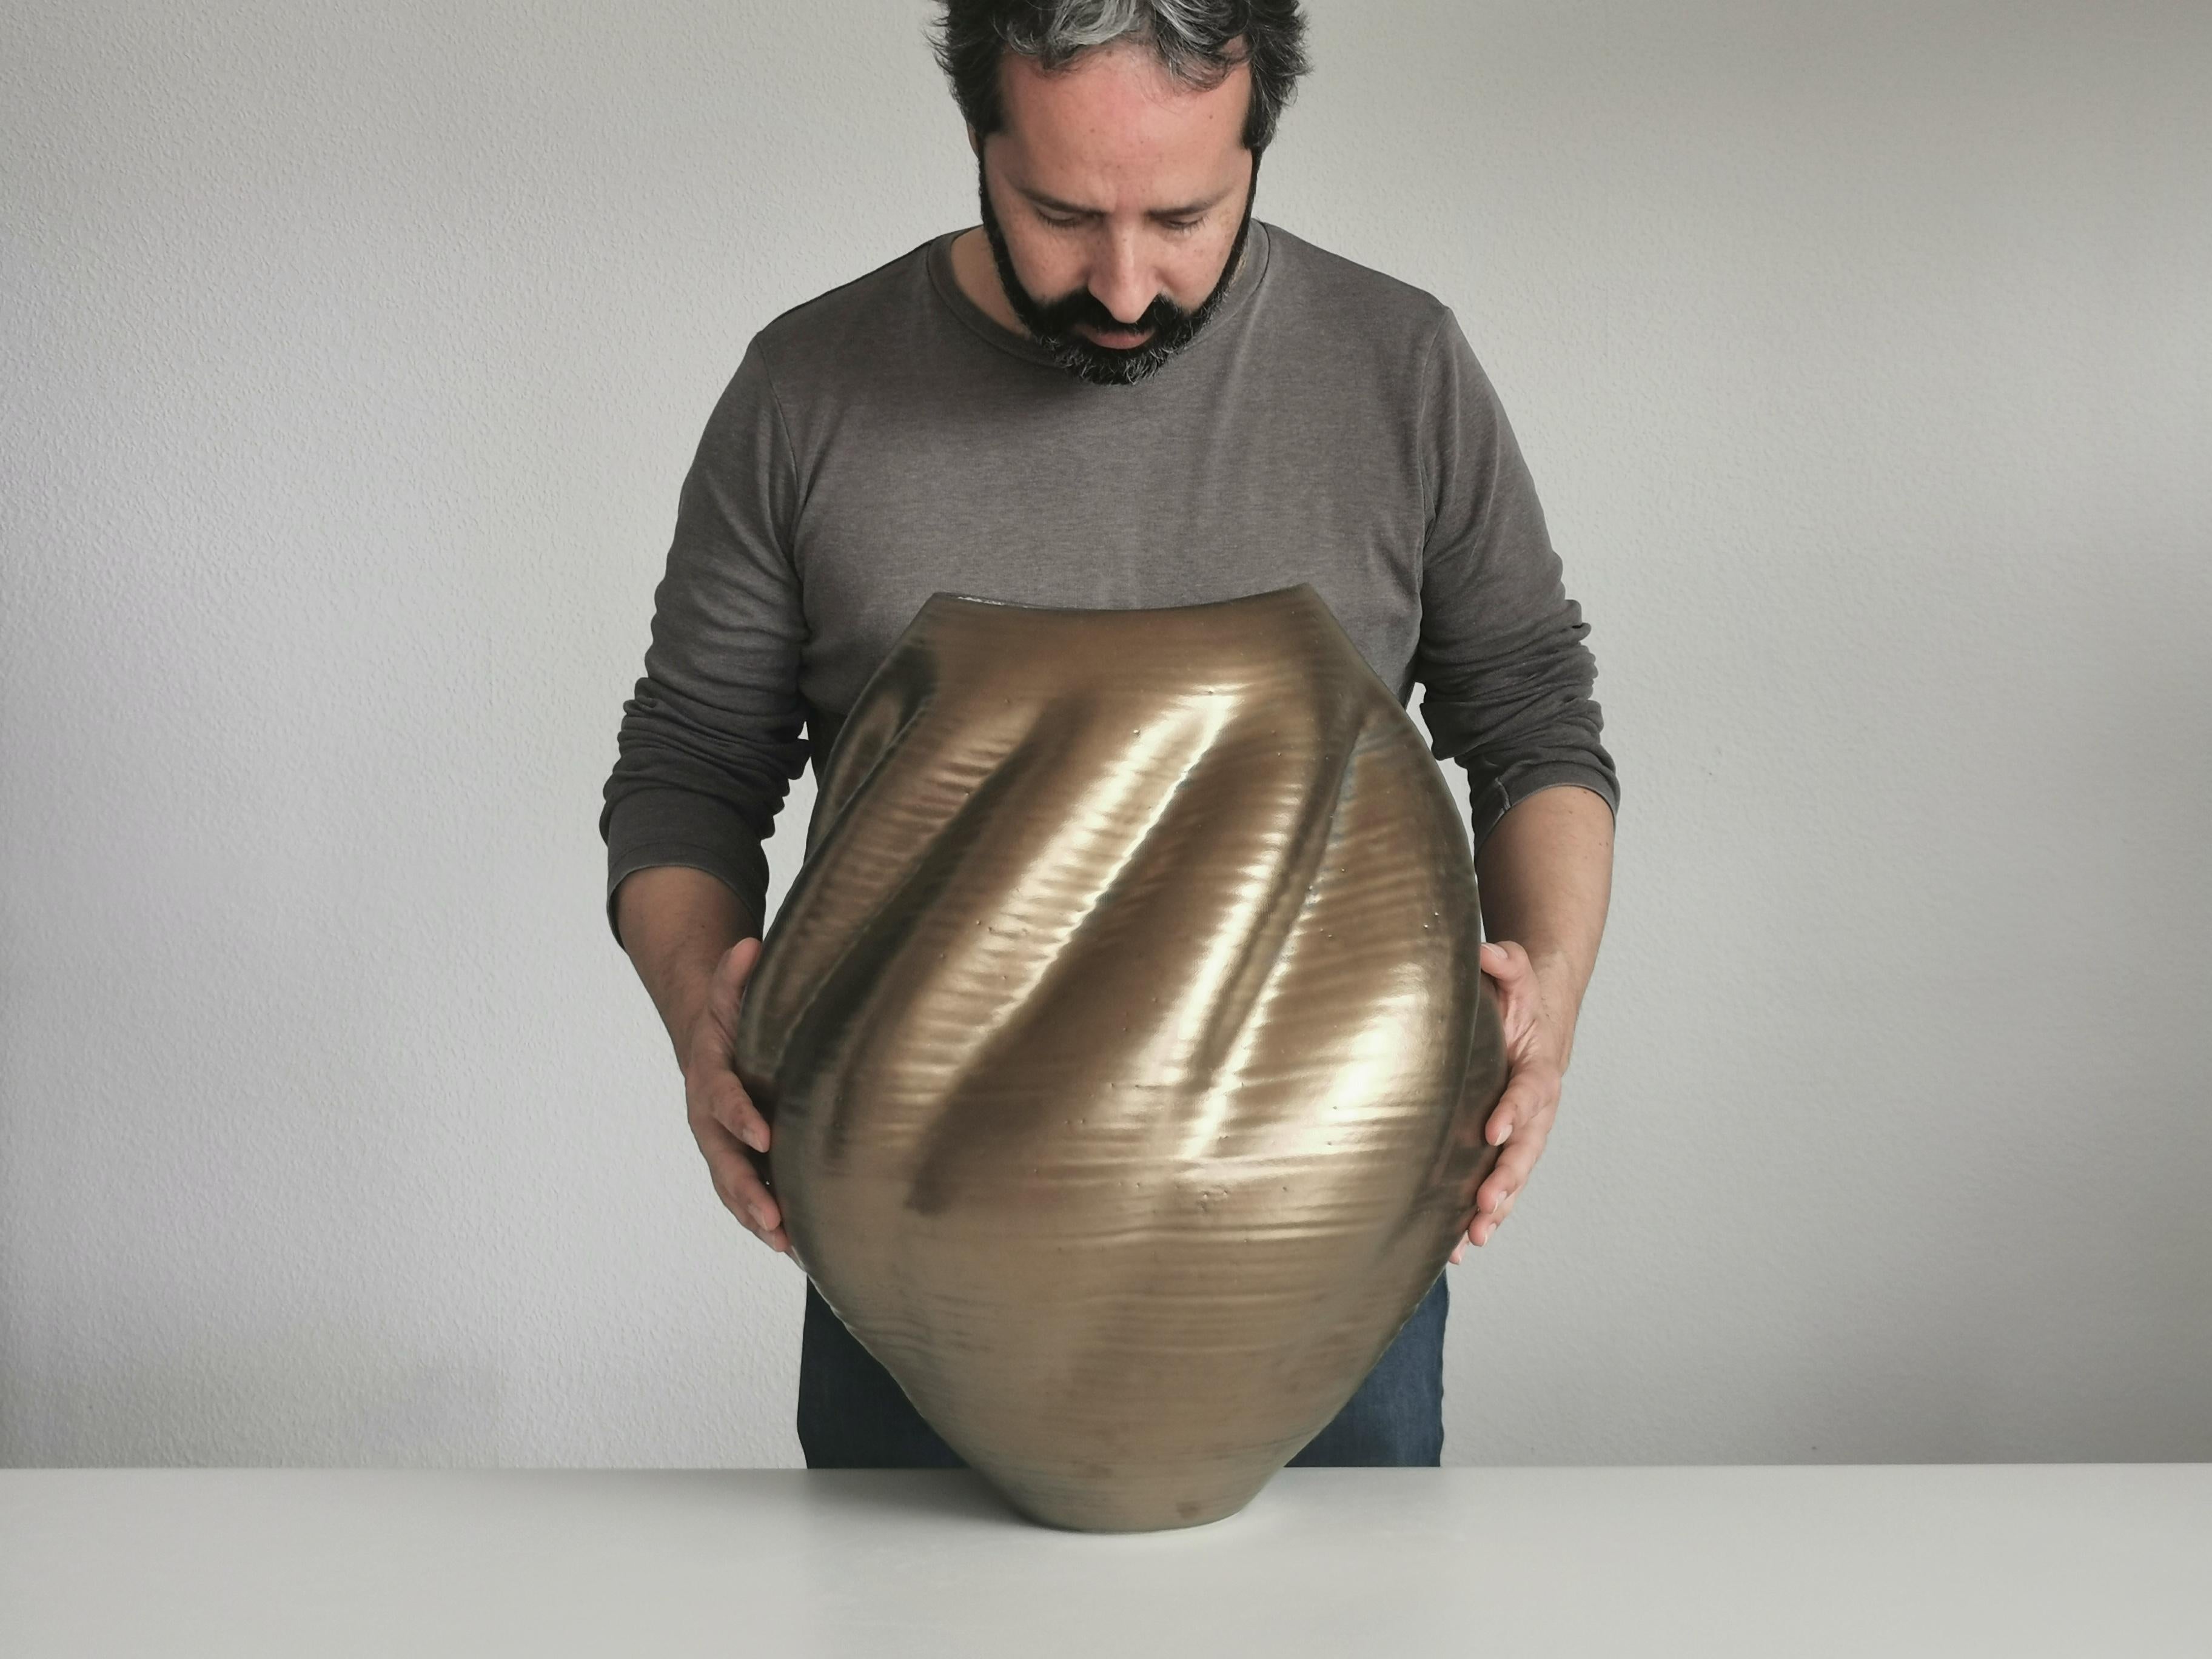 Large Gold Wave Form, Unique Contemporary Ceramic Sculpture Vessel N.80 5